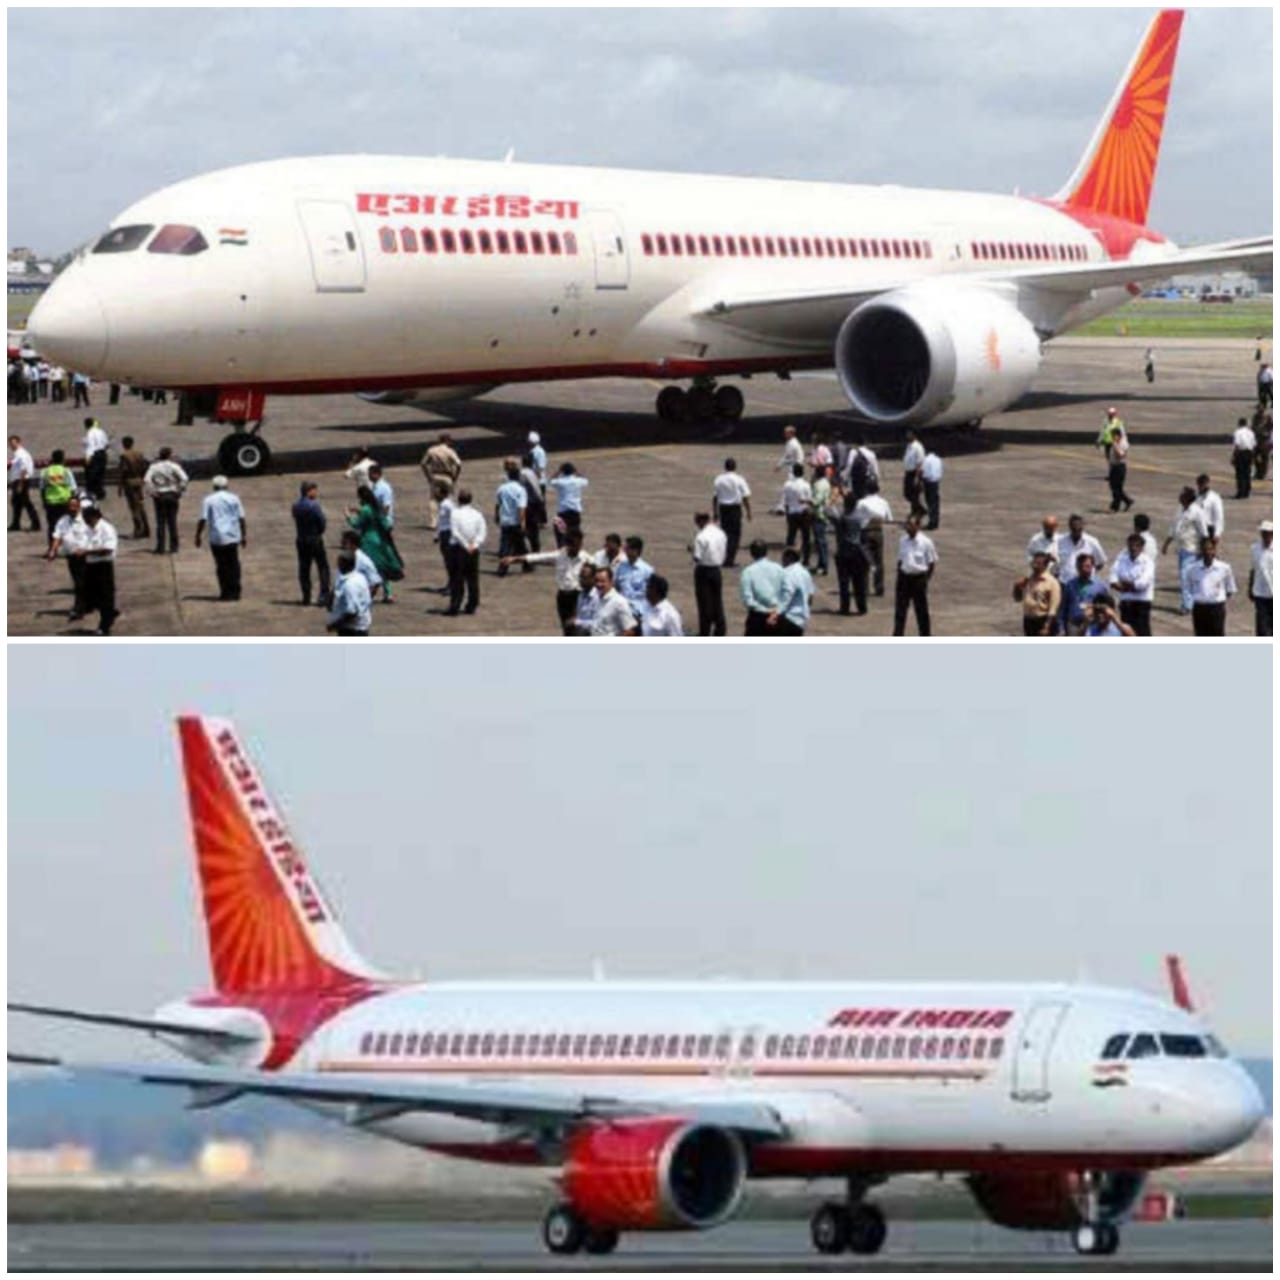 मोदी सरकार ने एयर इंडिया को बेचने का किया इरादा